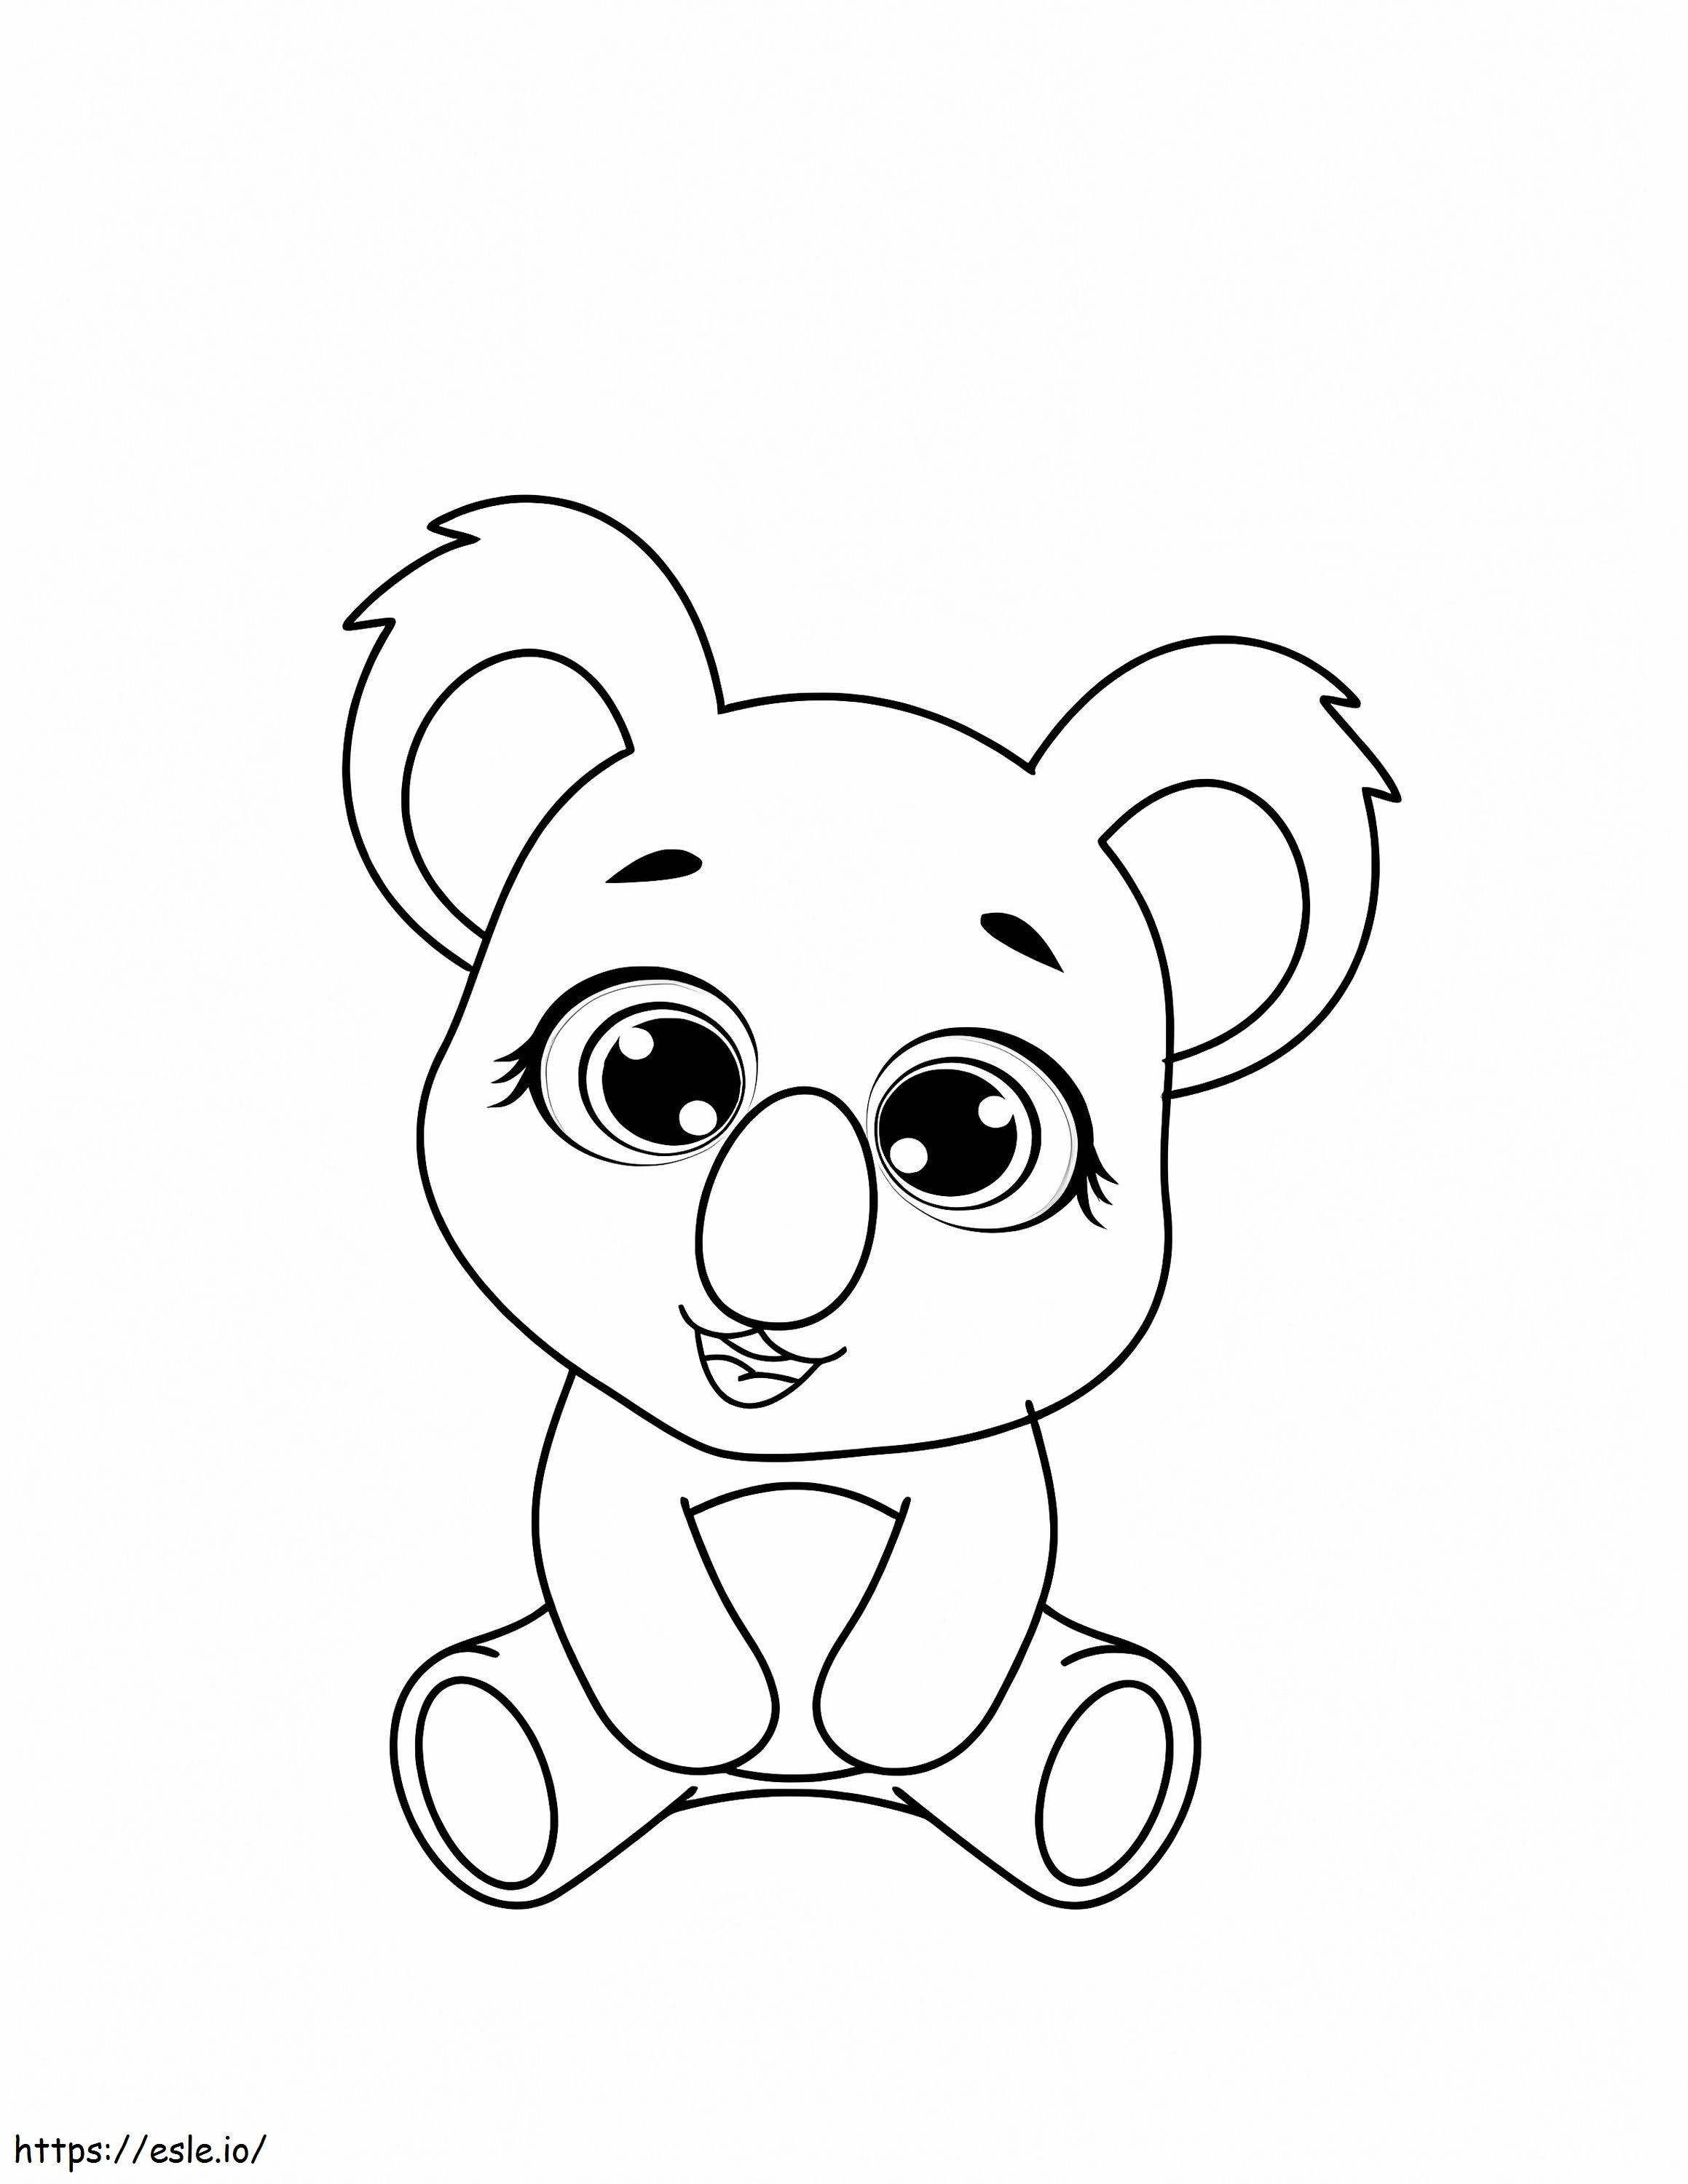 Coloriage Koala mignon assis à imprimer dessin